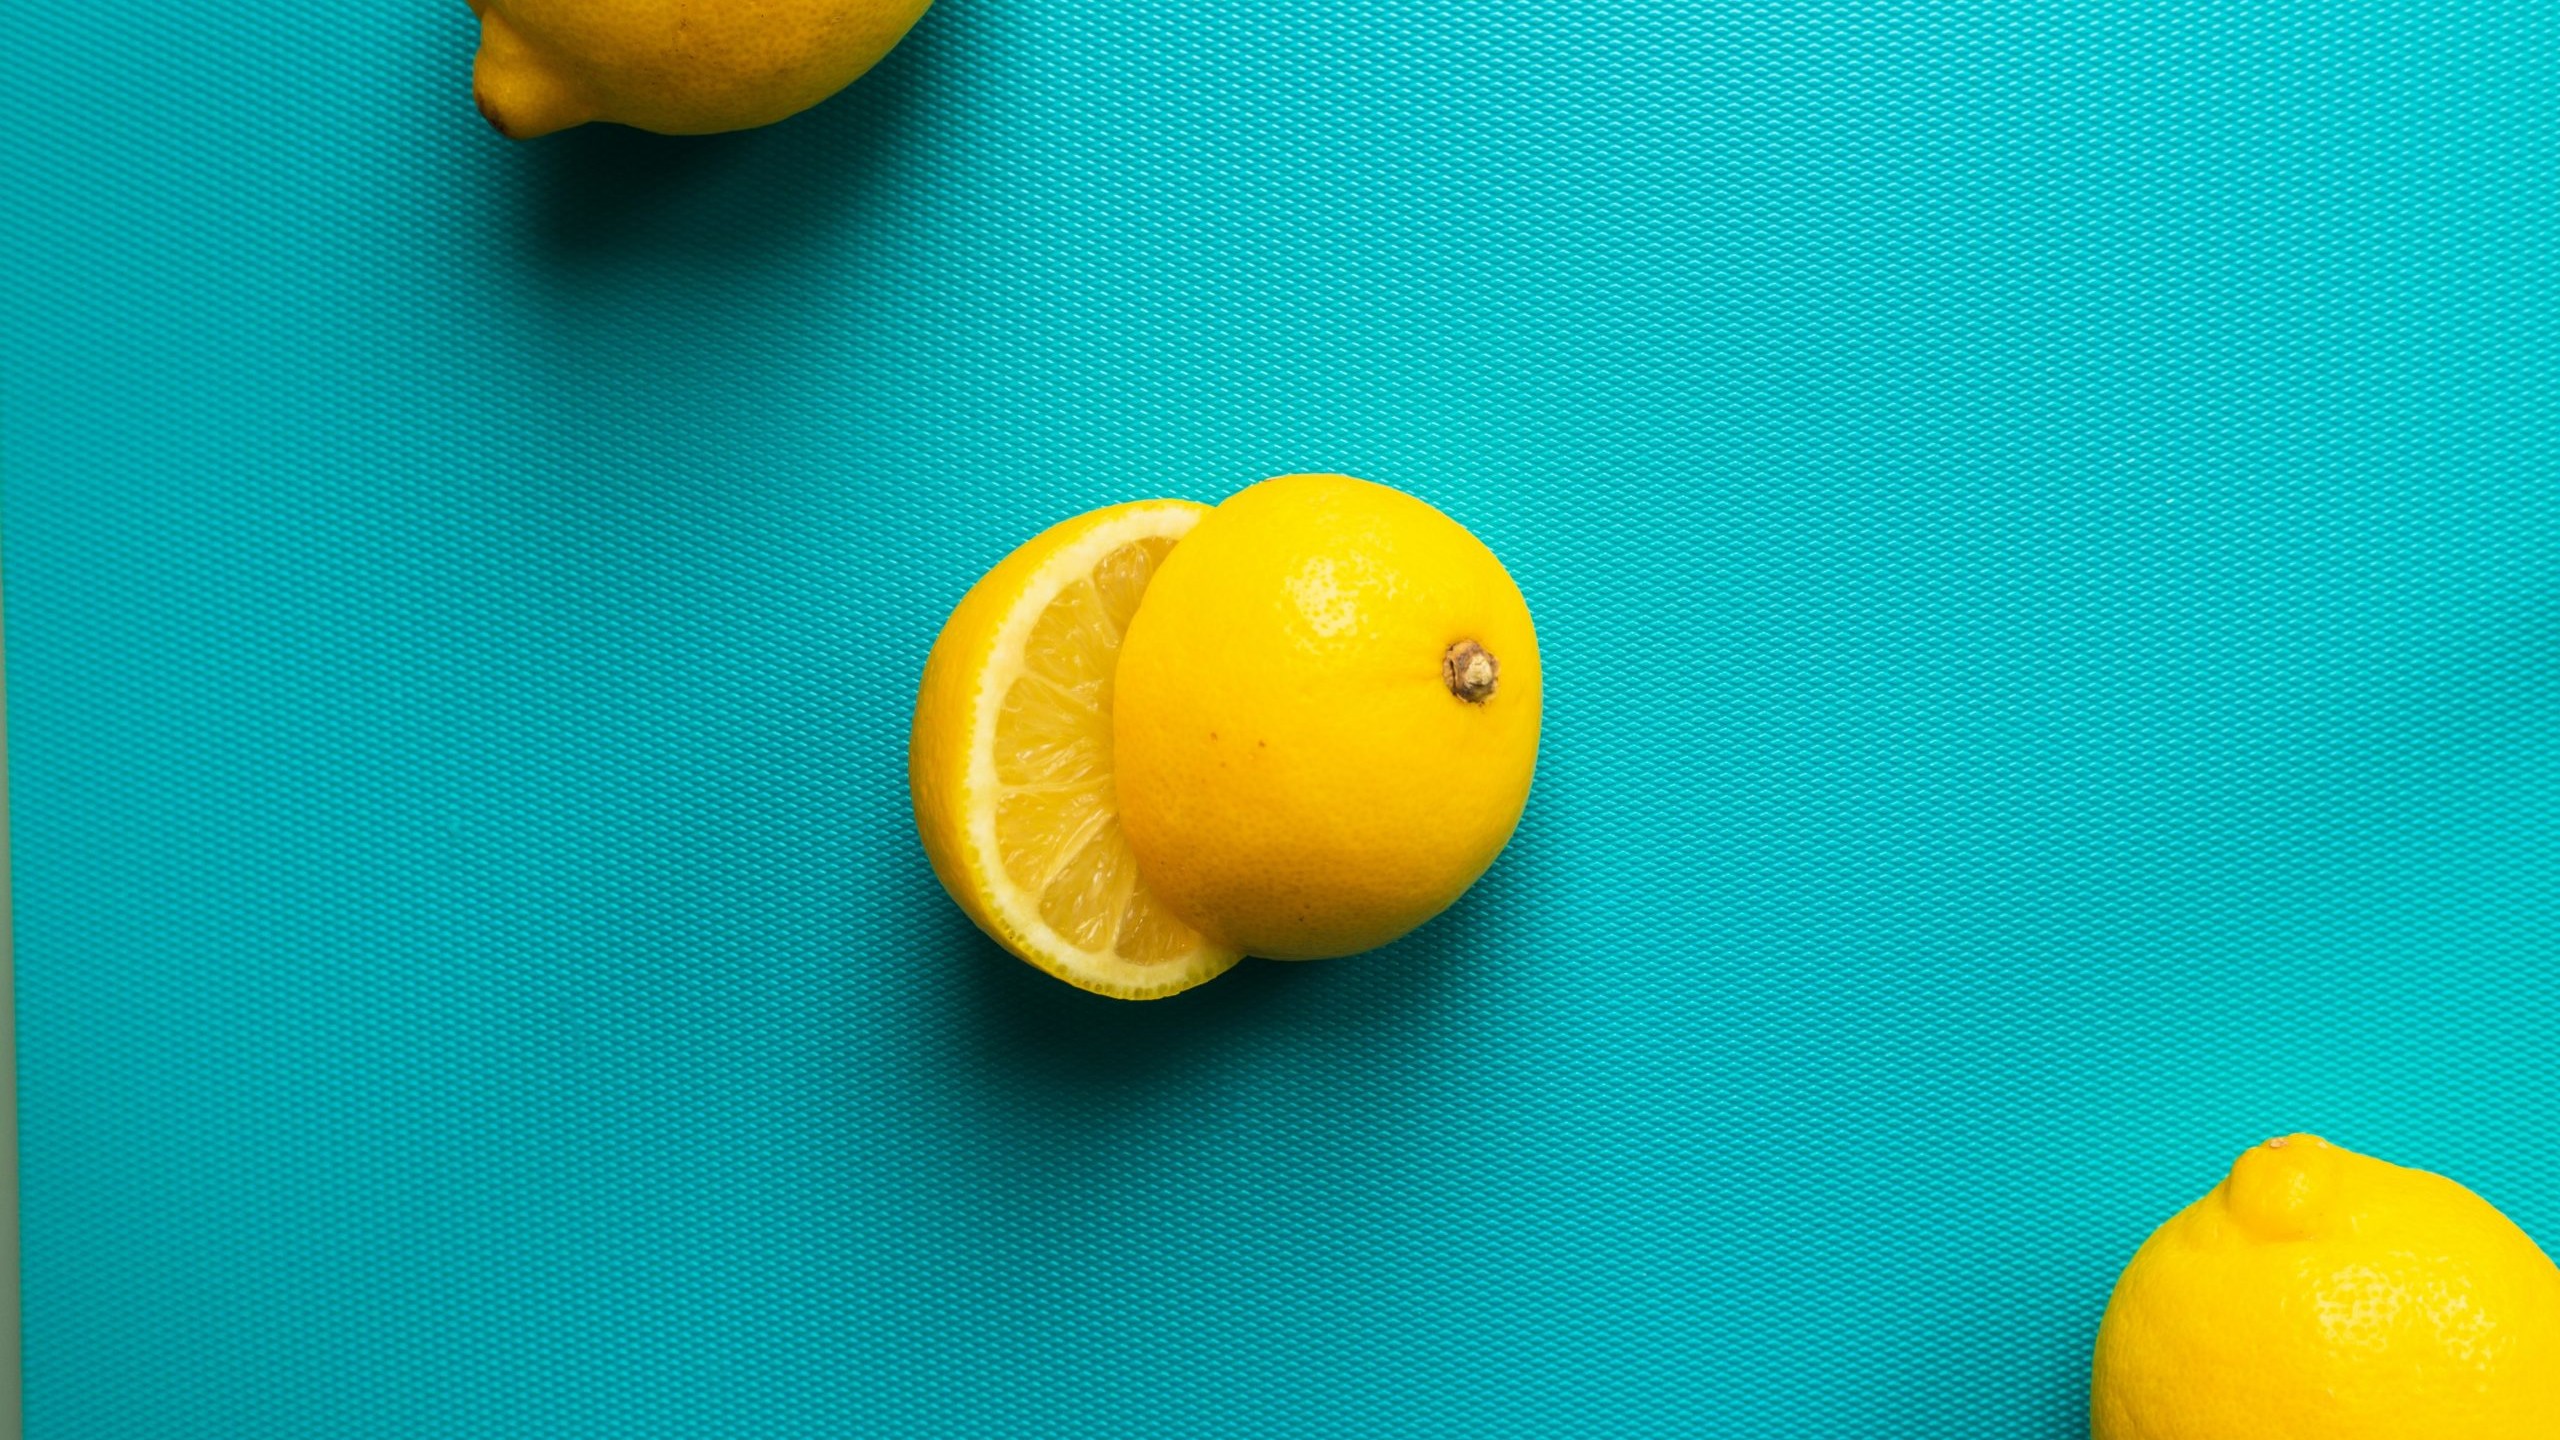 Glamorous photo of three lemons, one sliced